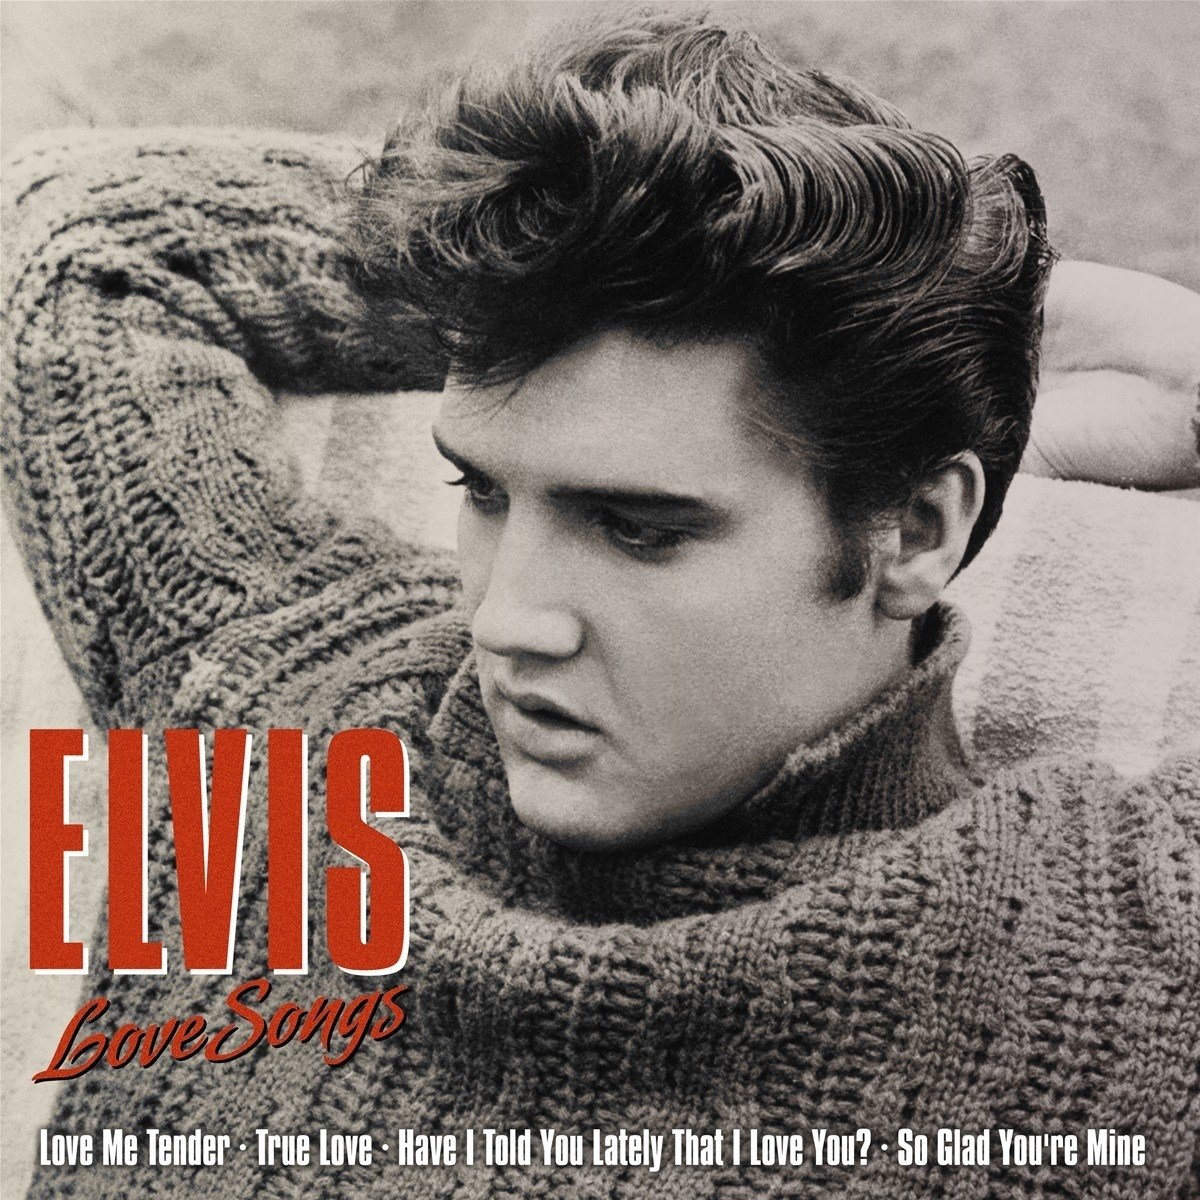 Elvis Presley "Love songs" LP